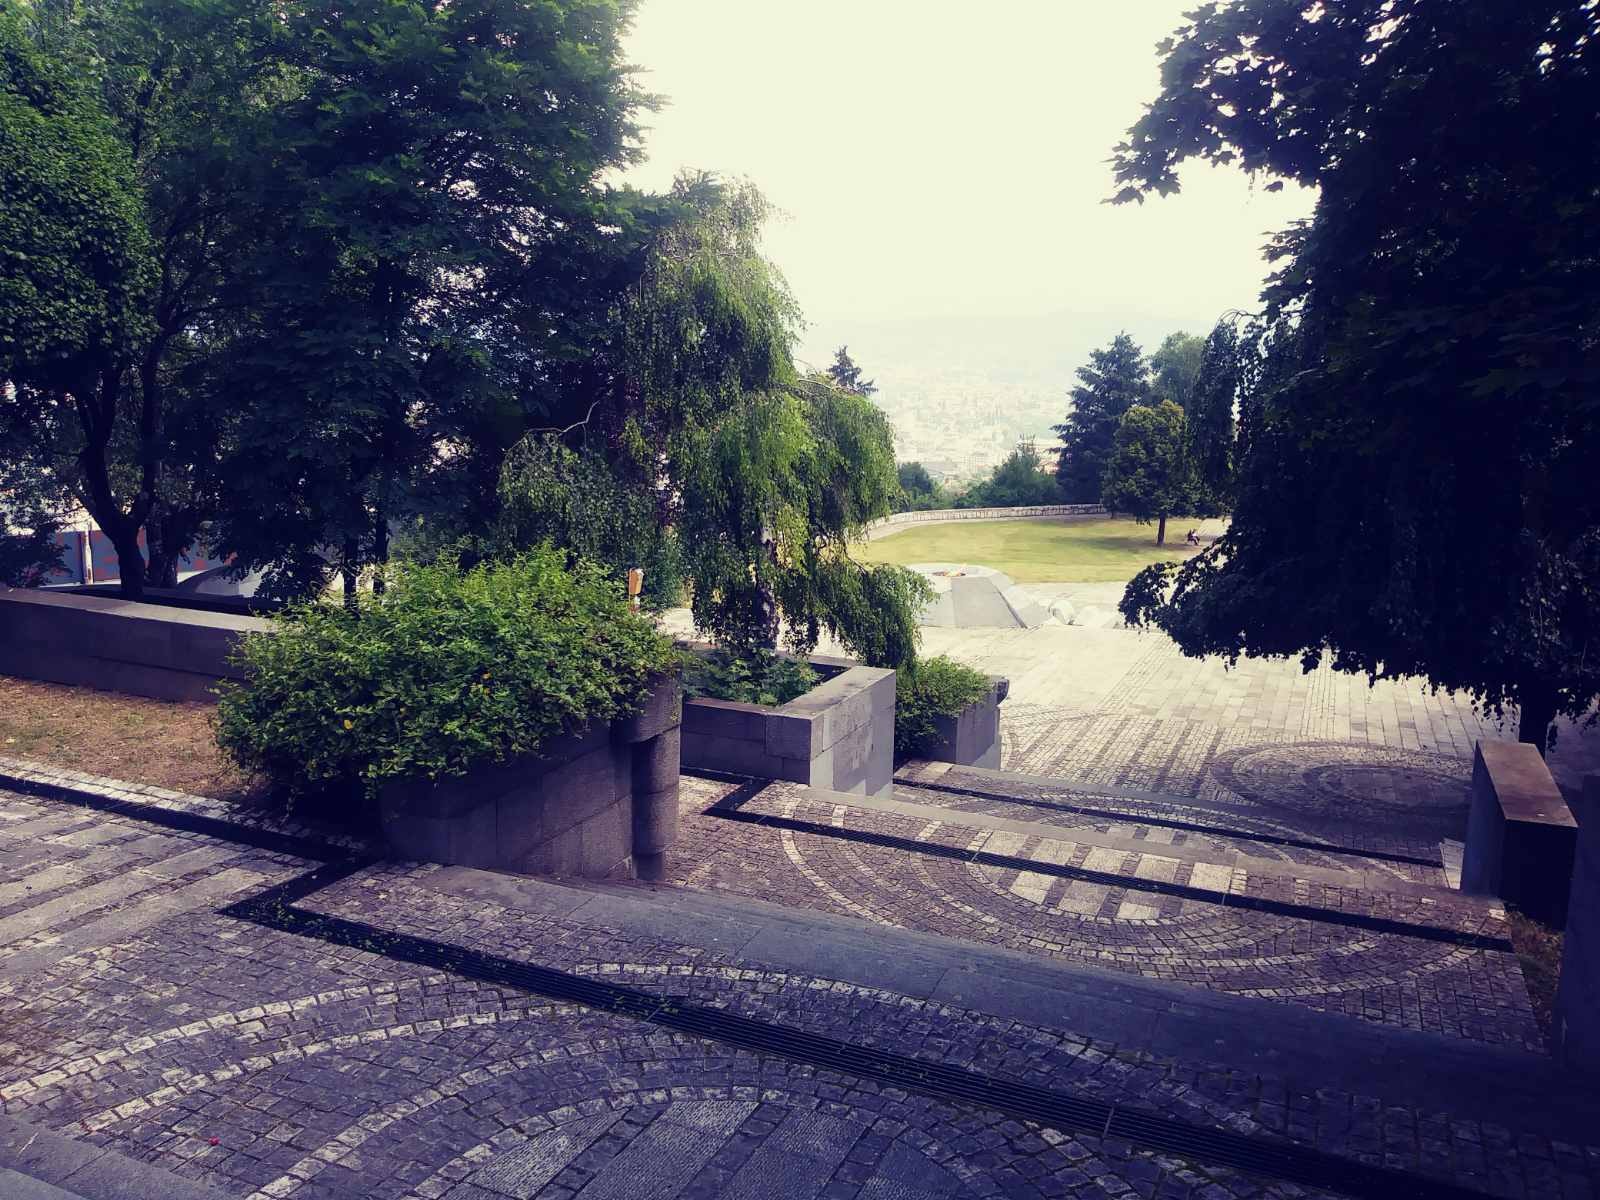  Spomen park Vraca iznad Sarajeva nikad ljepši